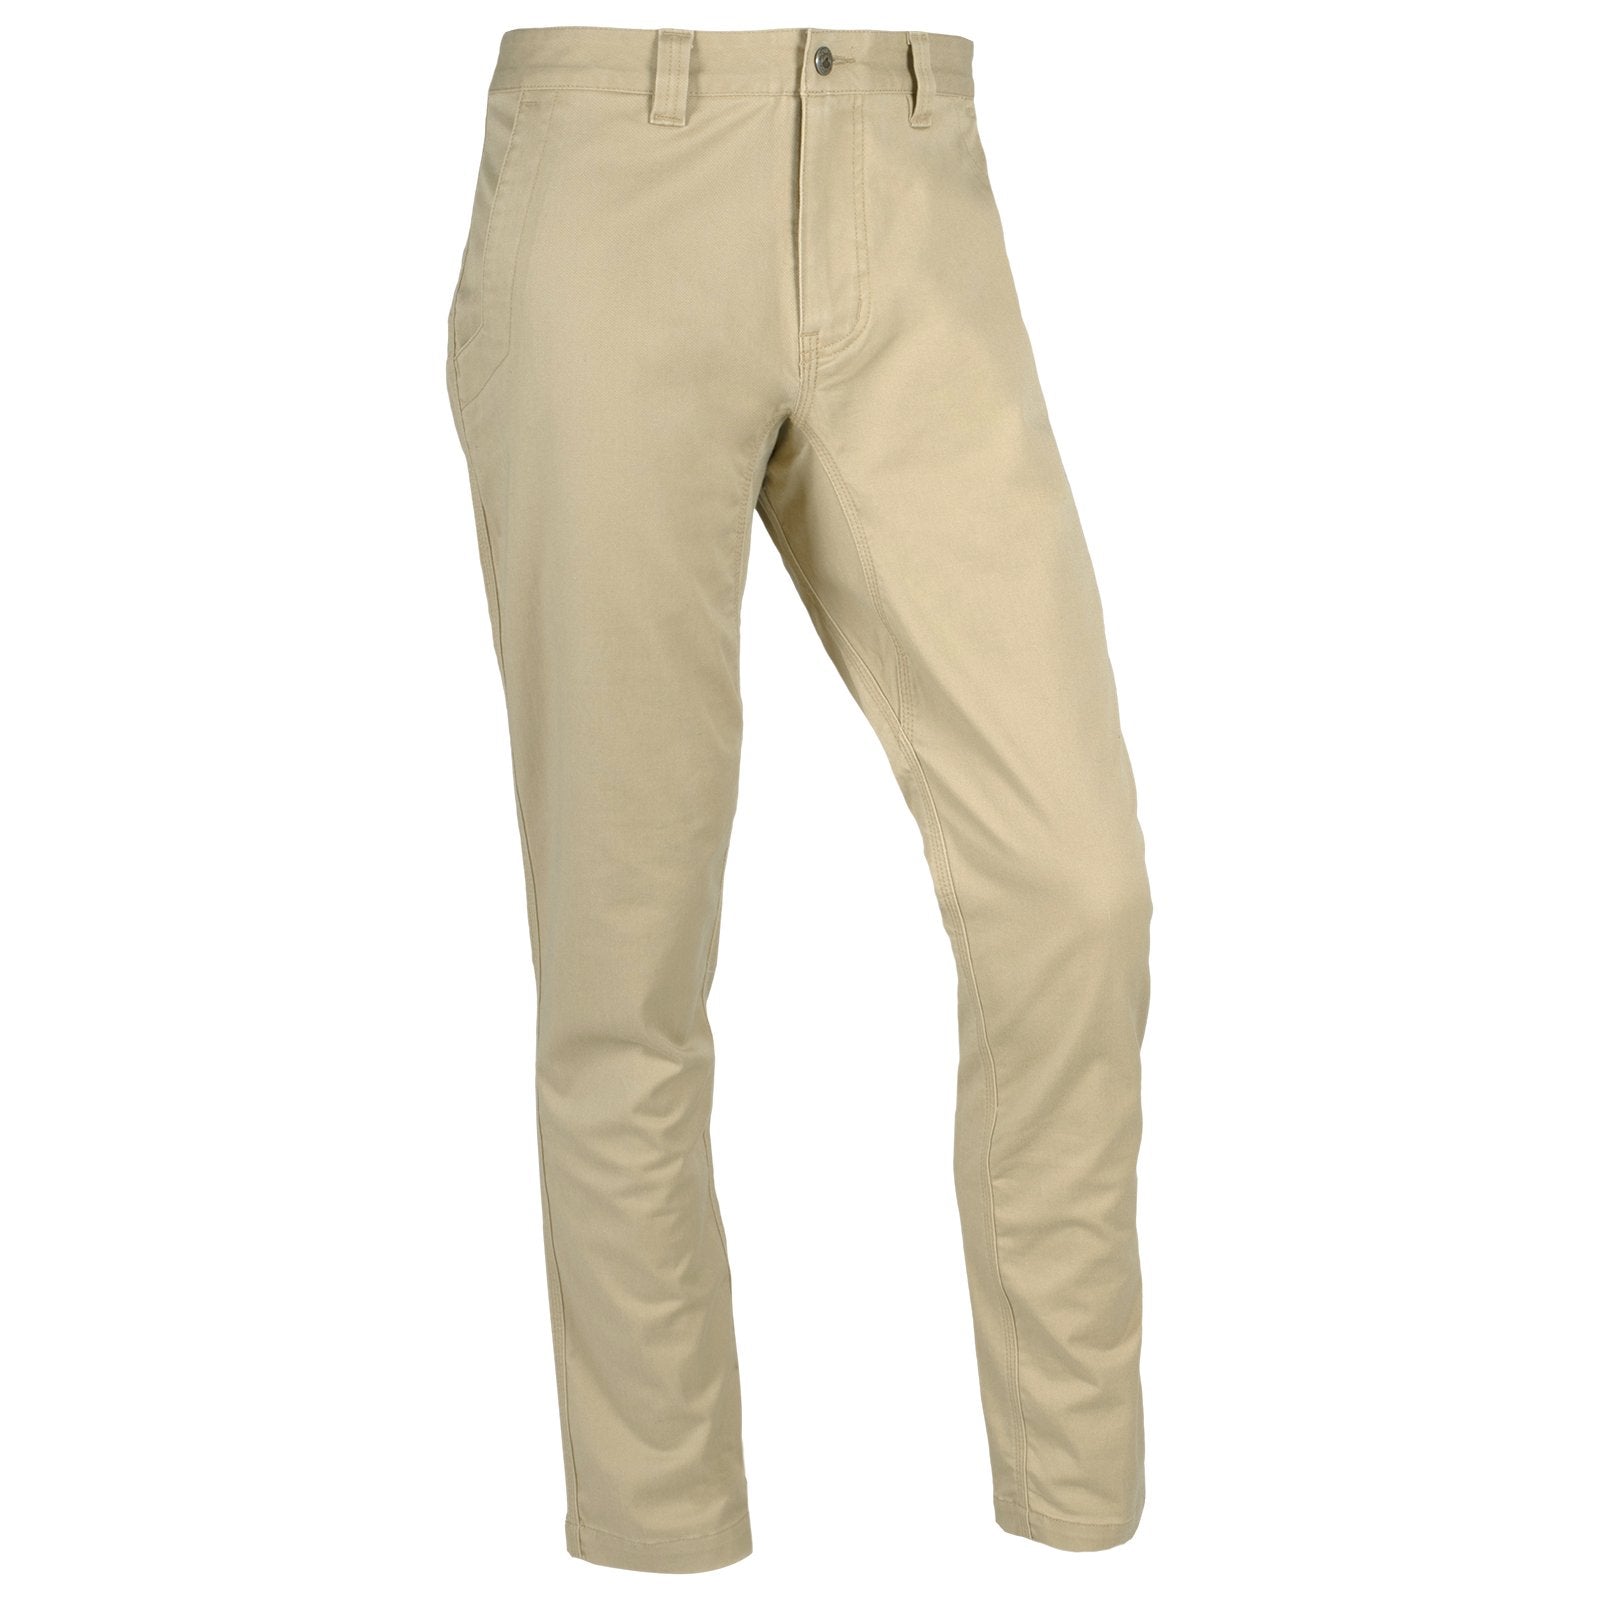 Hiltl Men's Khaki Contemporary Fit Parma 95 Cotton Pants Dress - 50 -  Walmart.com